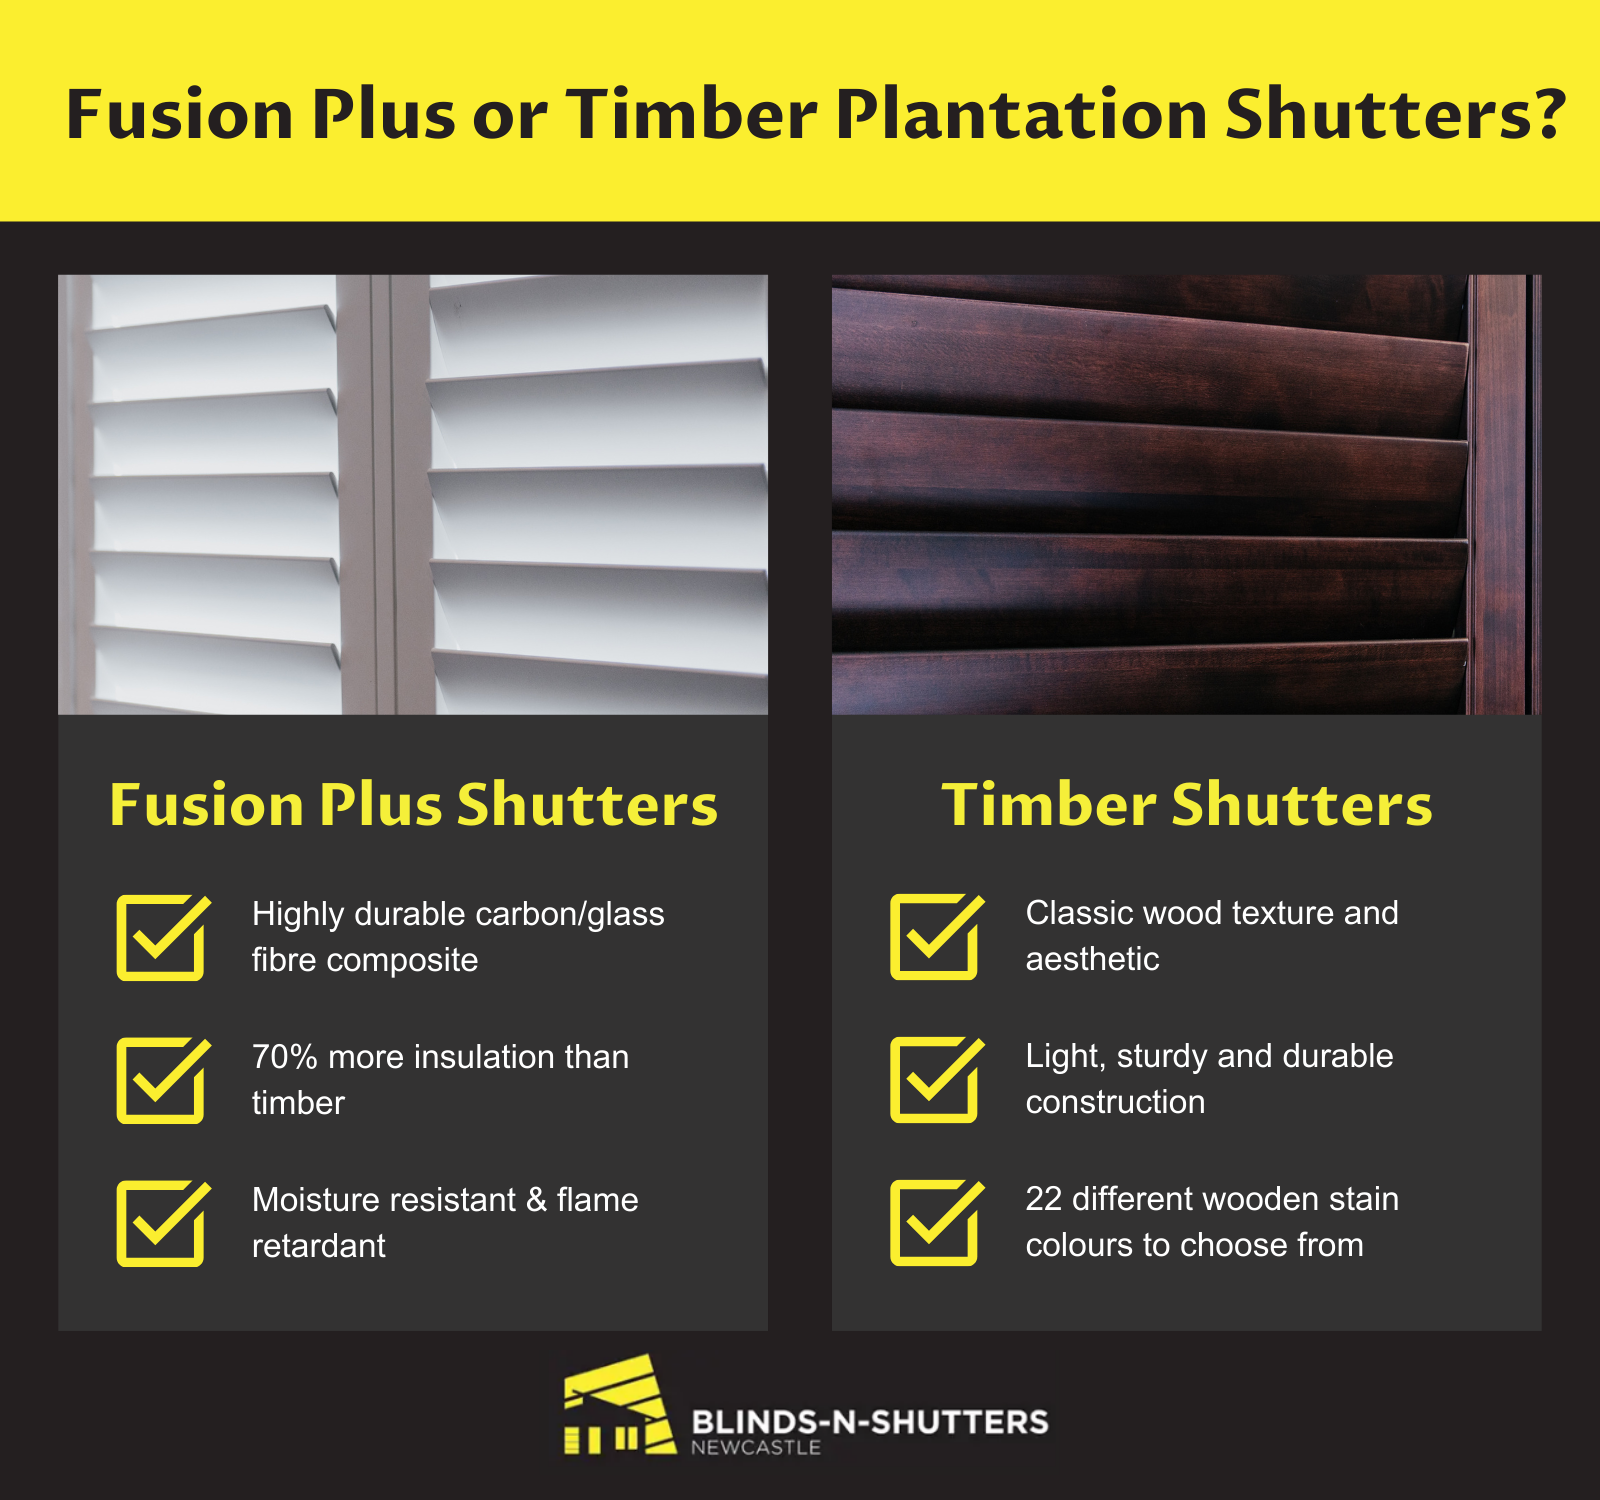  fusion plus vs timber plantation shutters